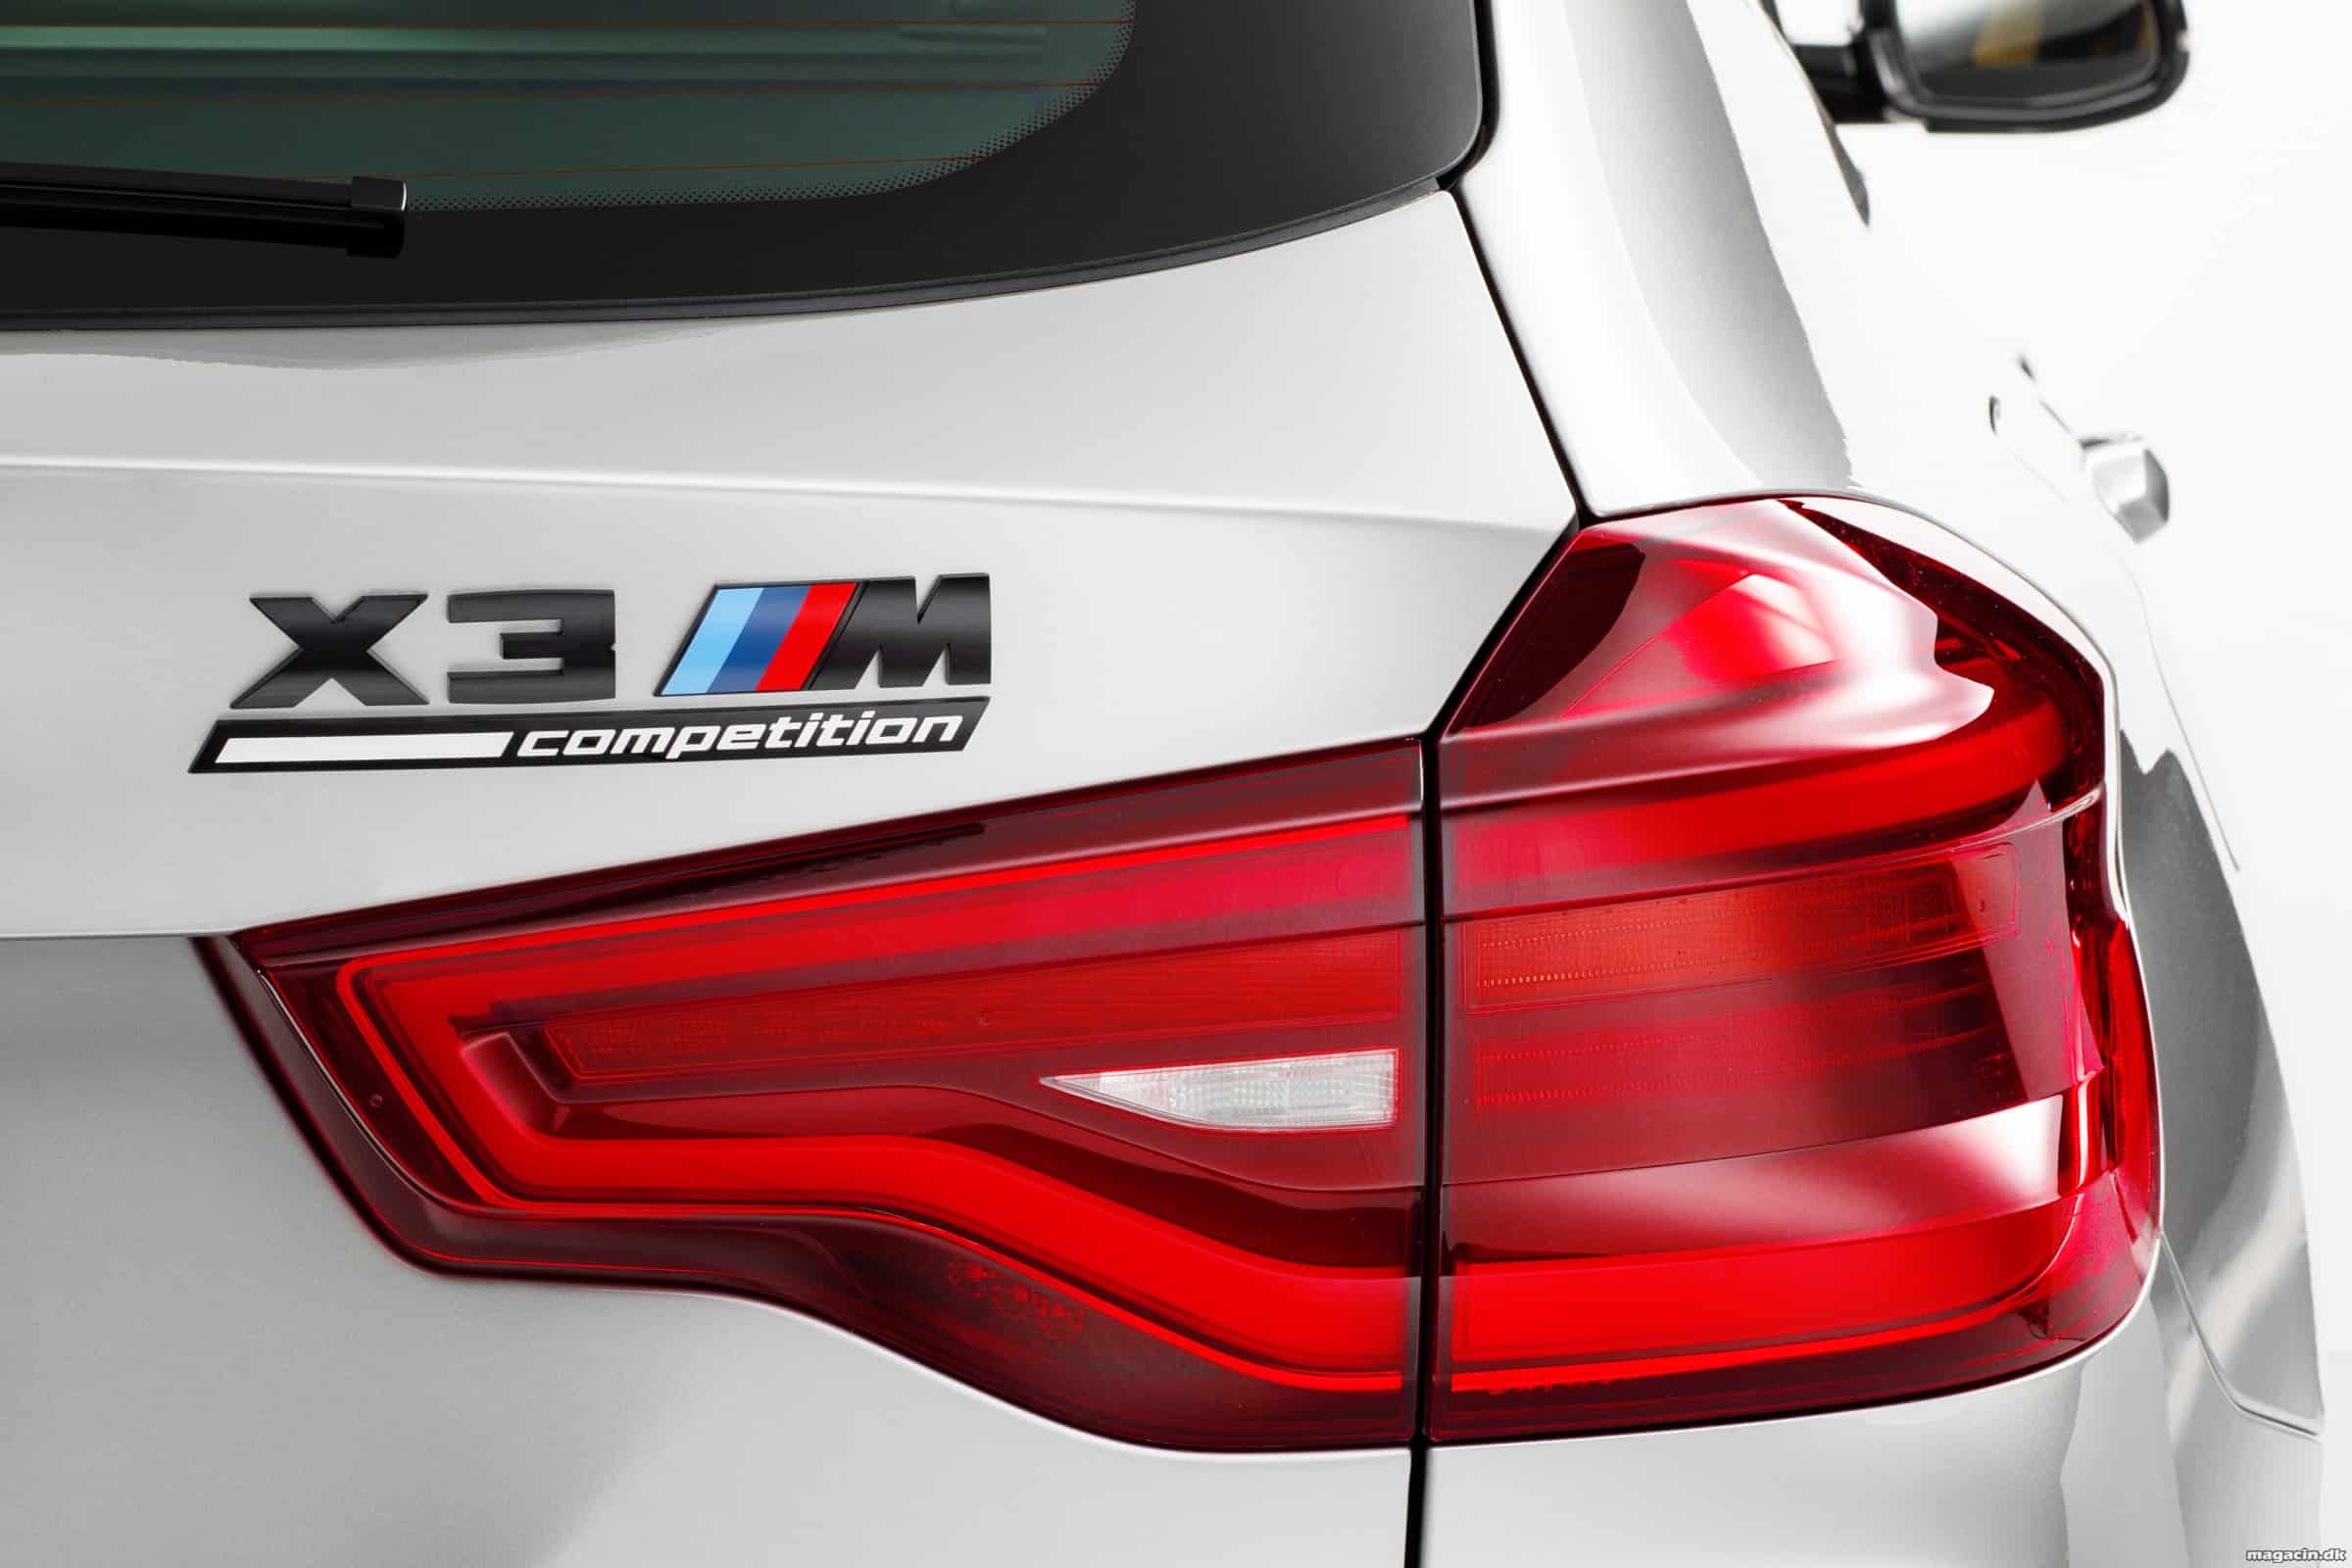 BMW X familien udvides med stærke M modeller